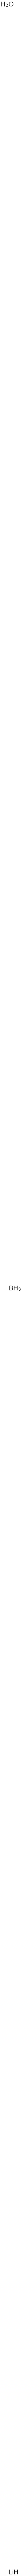 Lithium borate Struktur